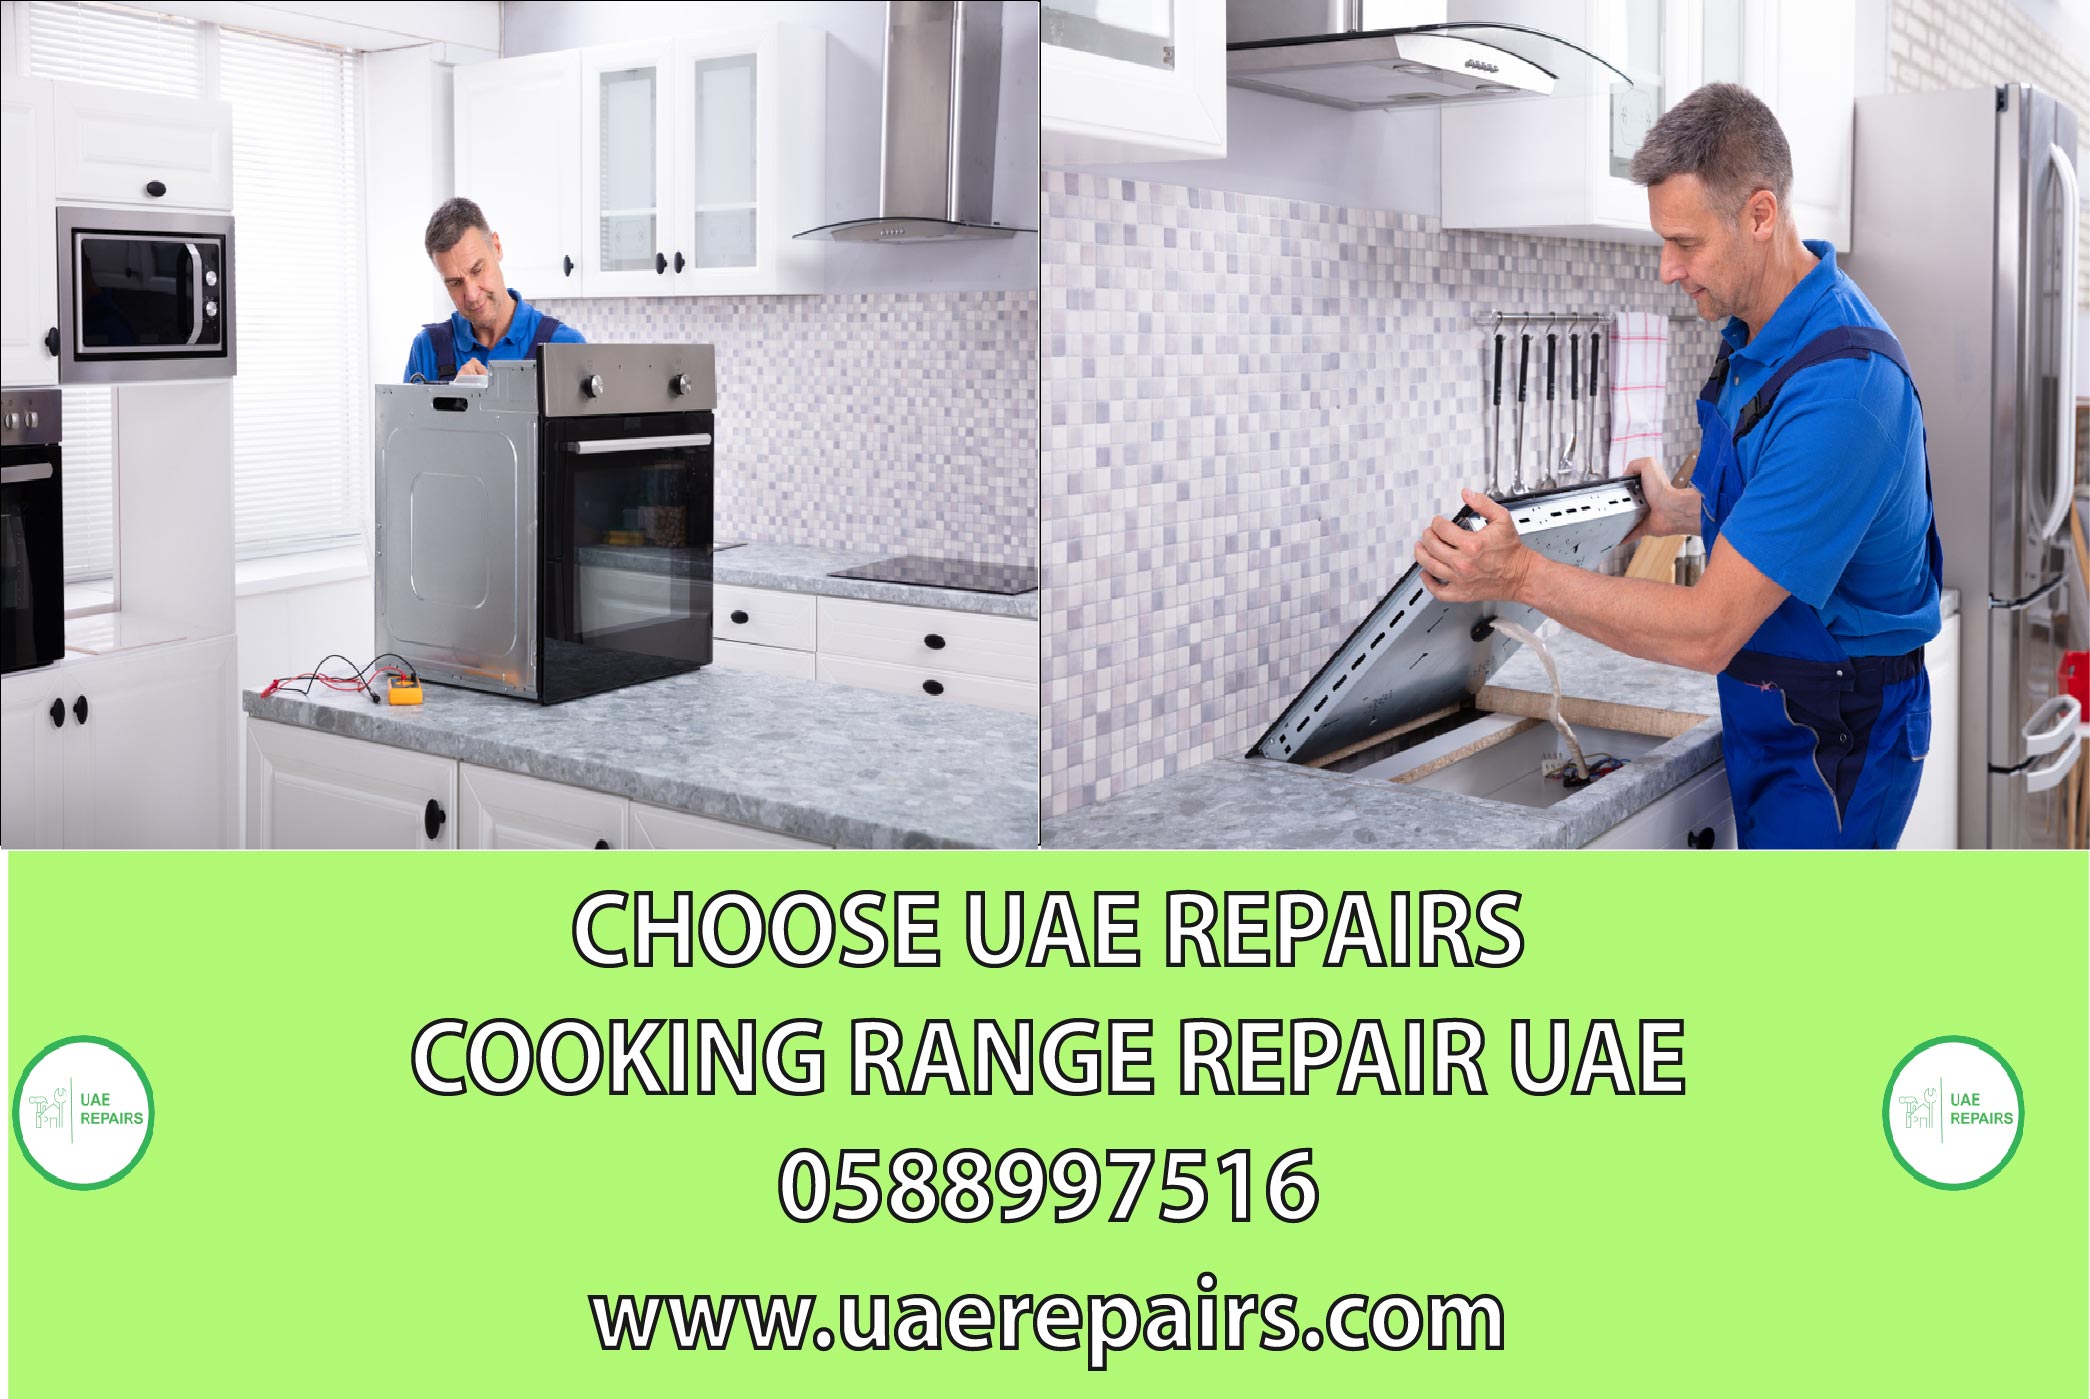  CHOOSE UAE COOKING RANGE REPAIR UAE CONTACT 0588997516